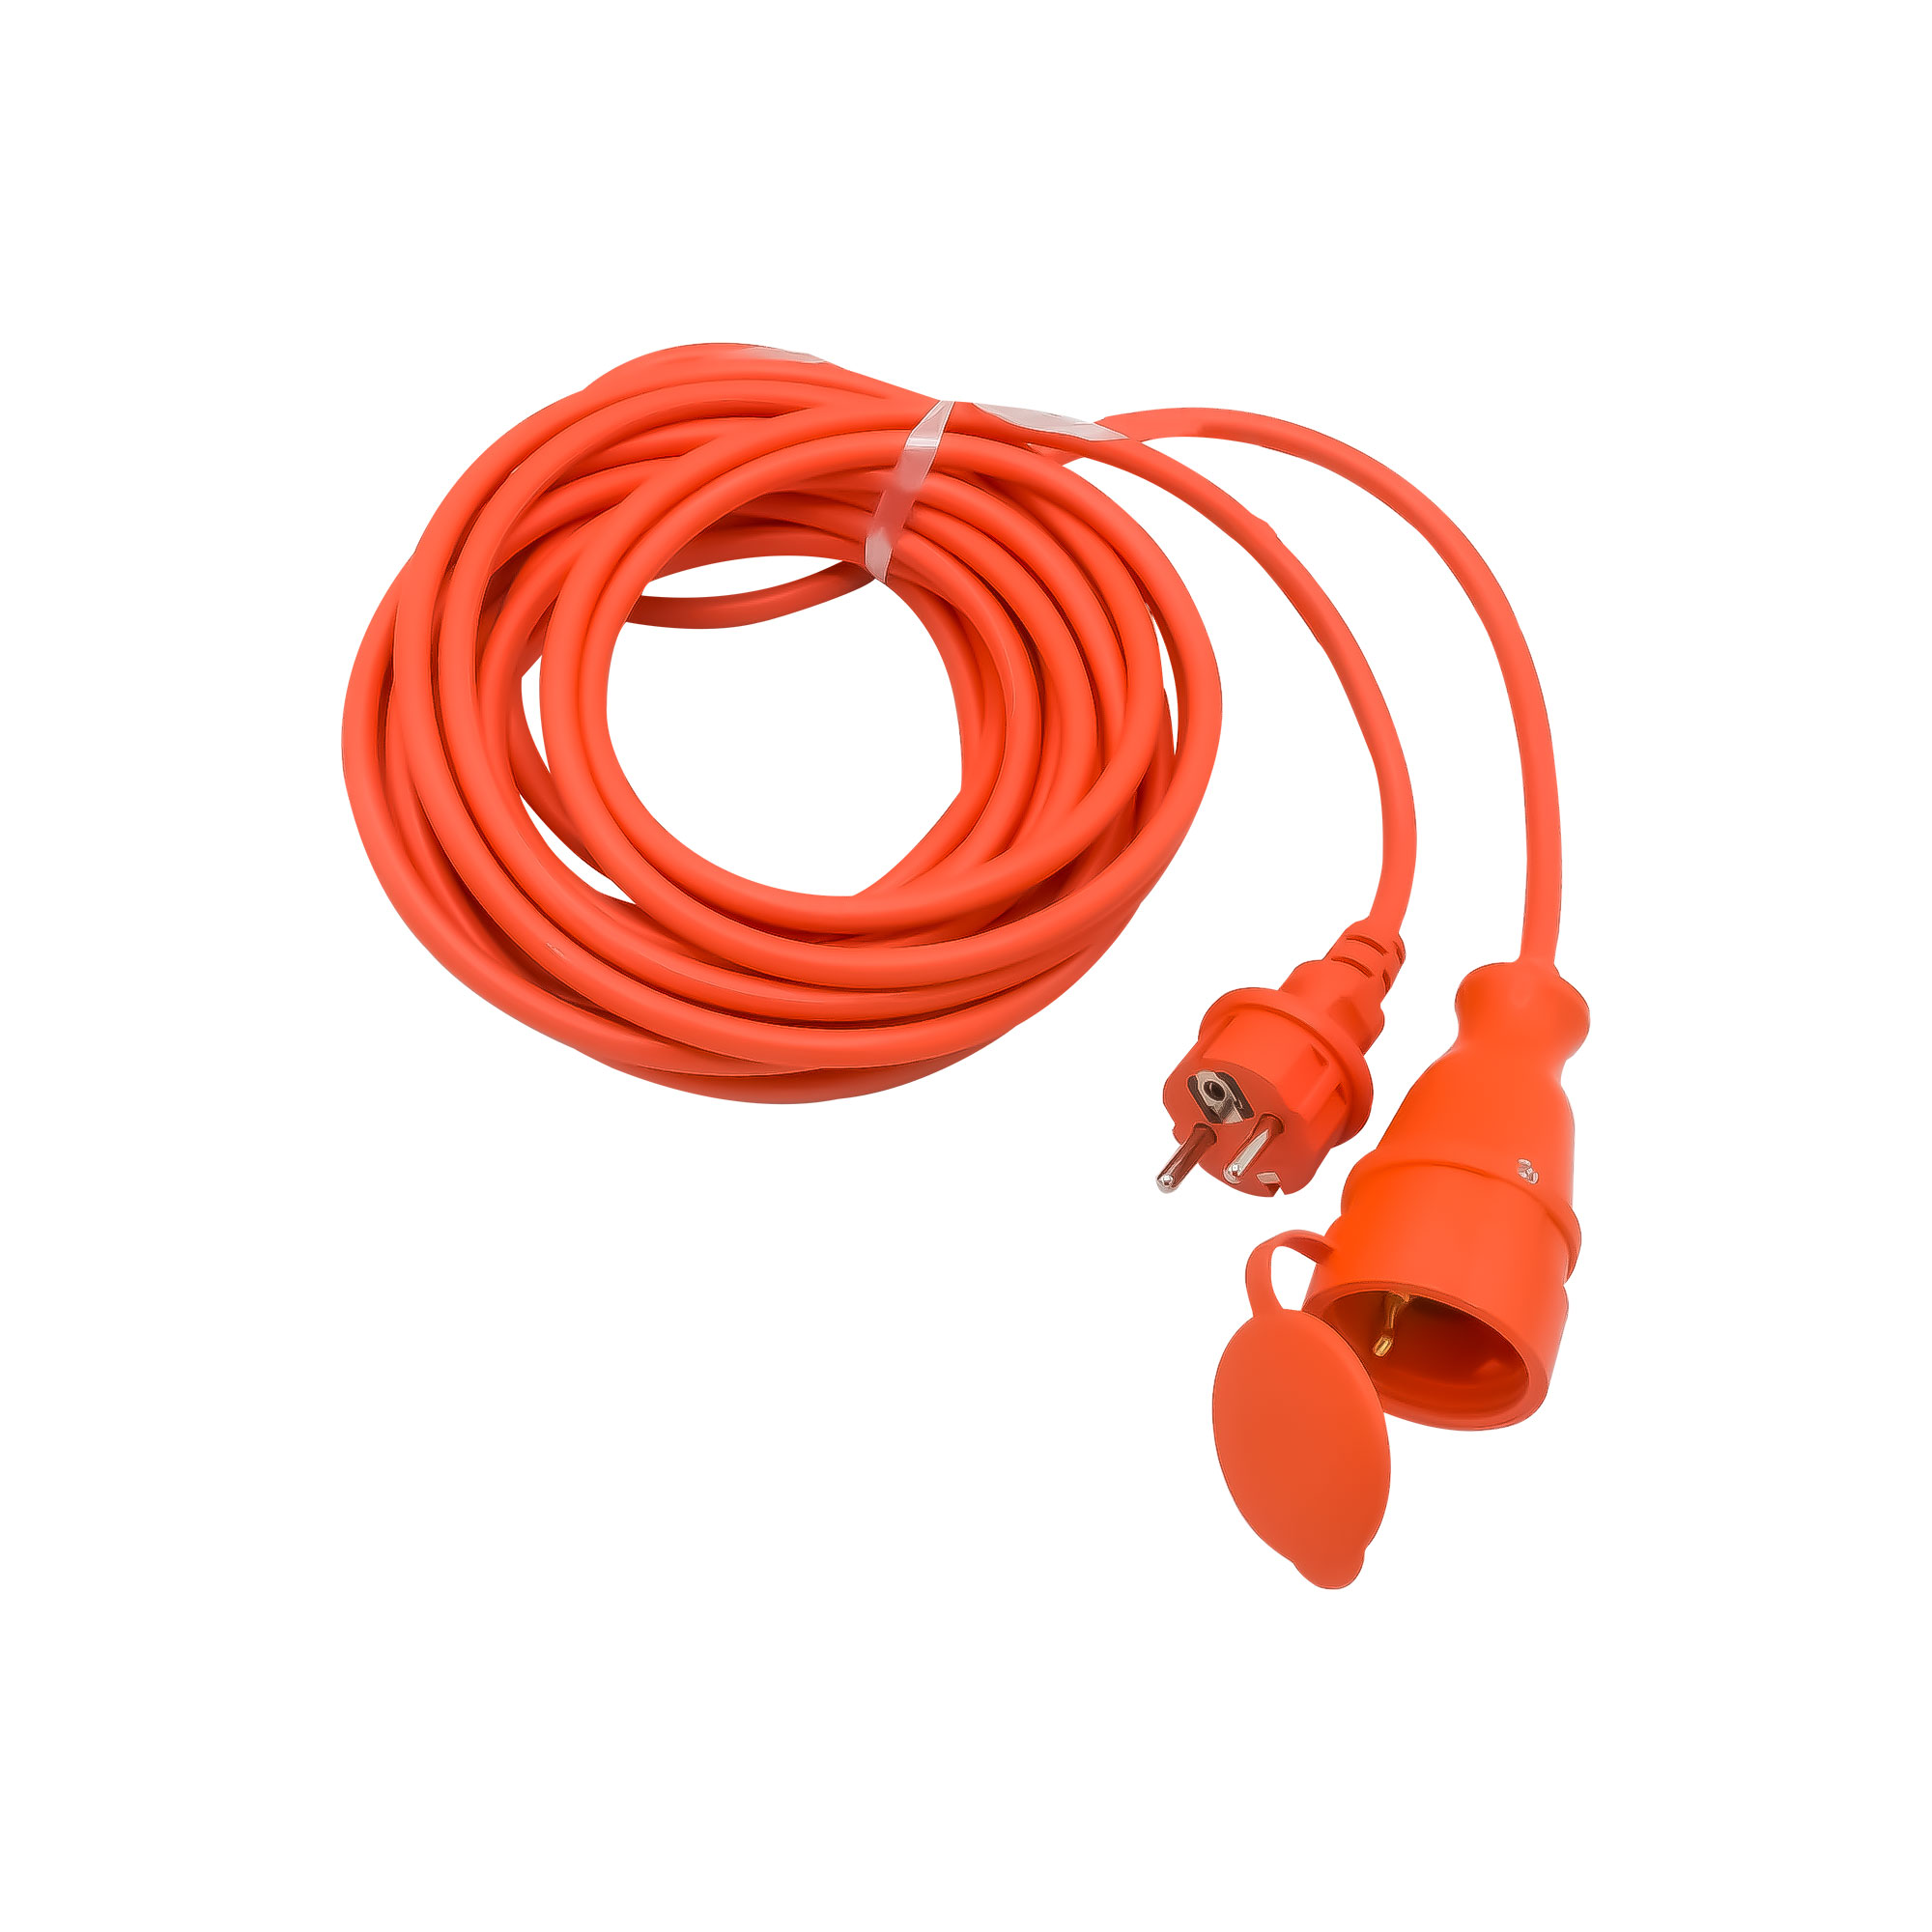 Cablu prelungitor cu conductor din cupru 3 x 1,5, 10M, cu stecher si cupla, portocaliu 